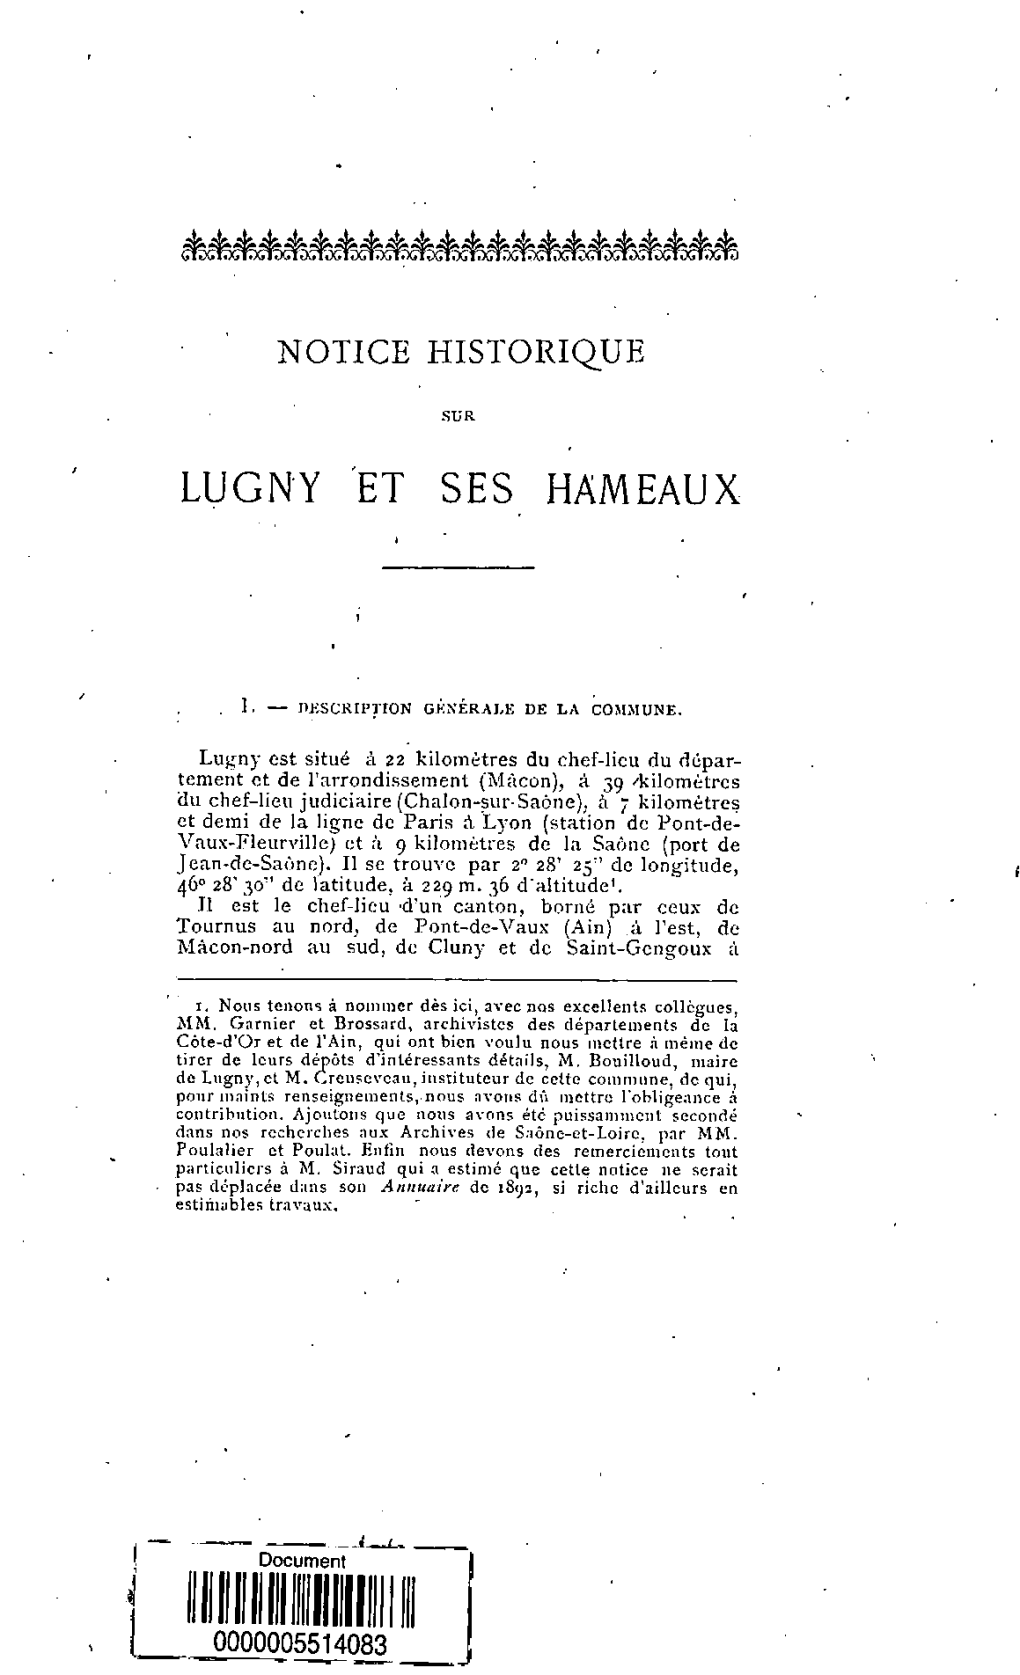 Notice Historique Sur Lugny Et Ses Hameaux